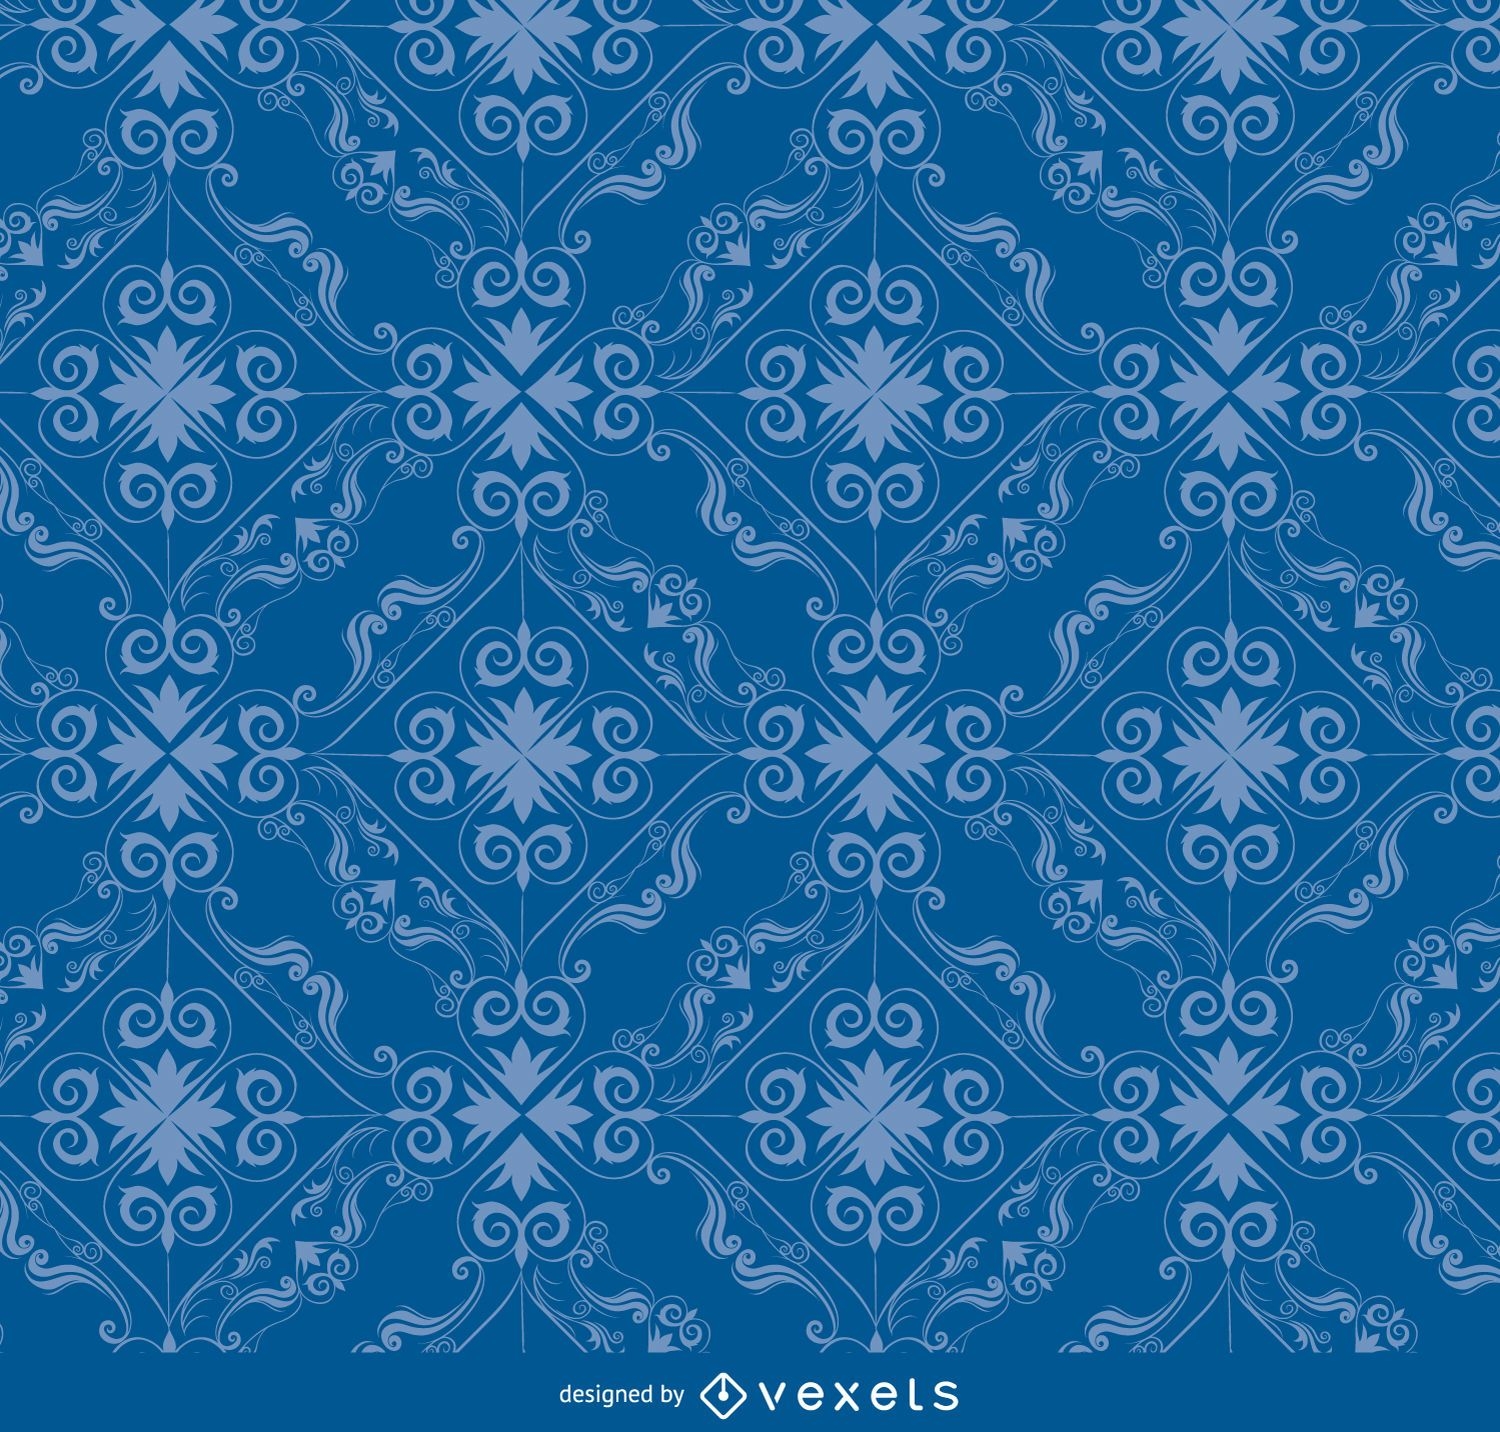 Rhomb swirls blue pattern